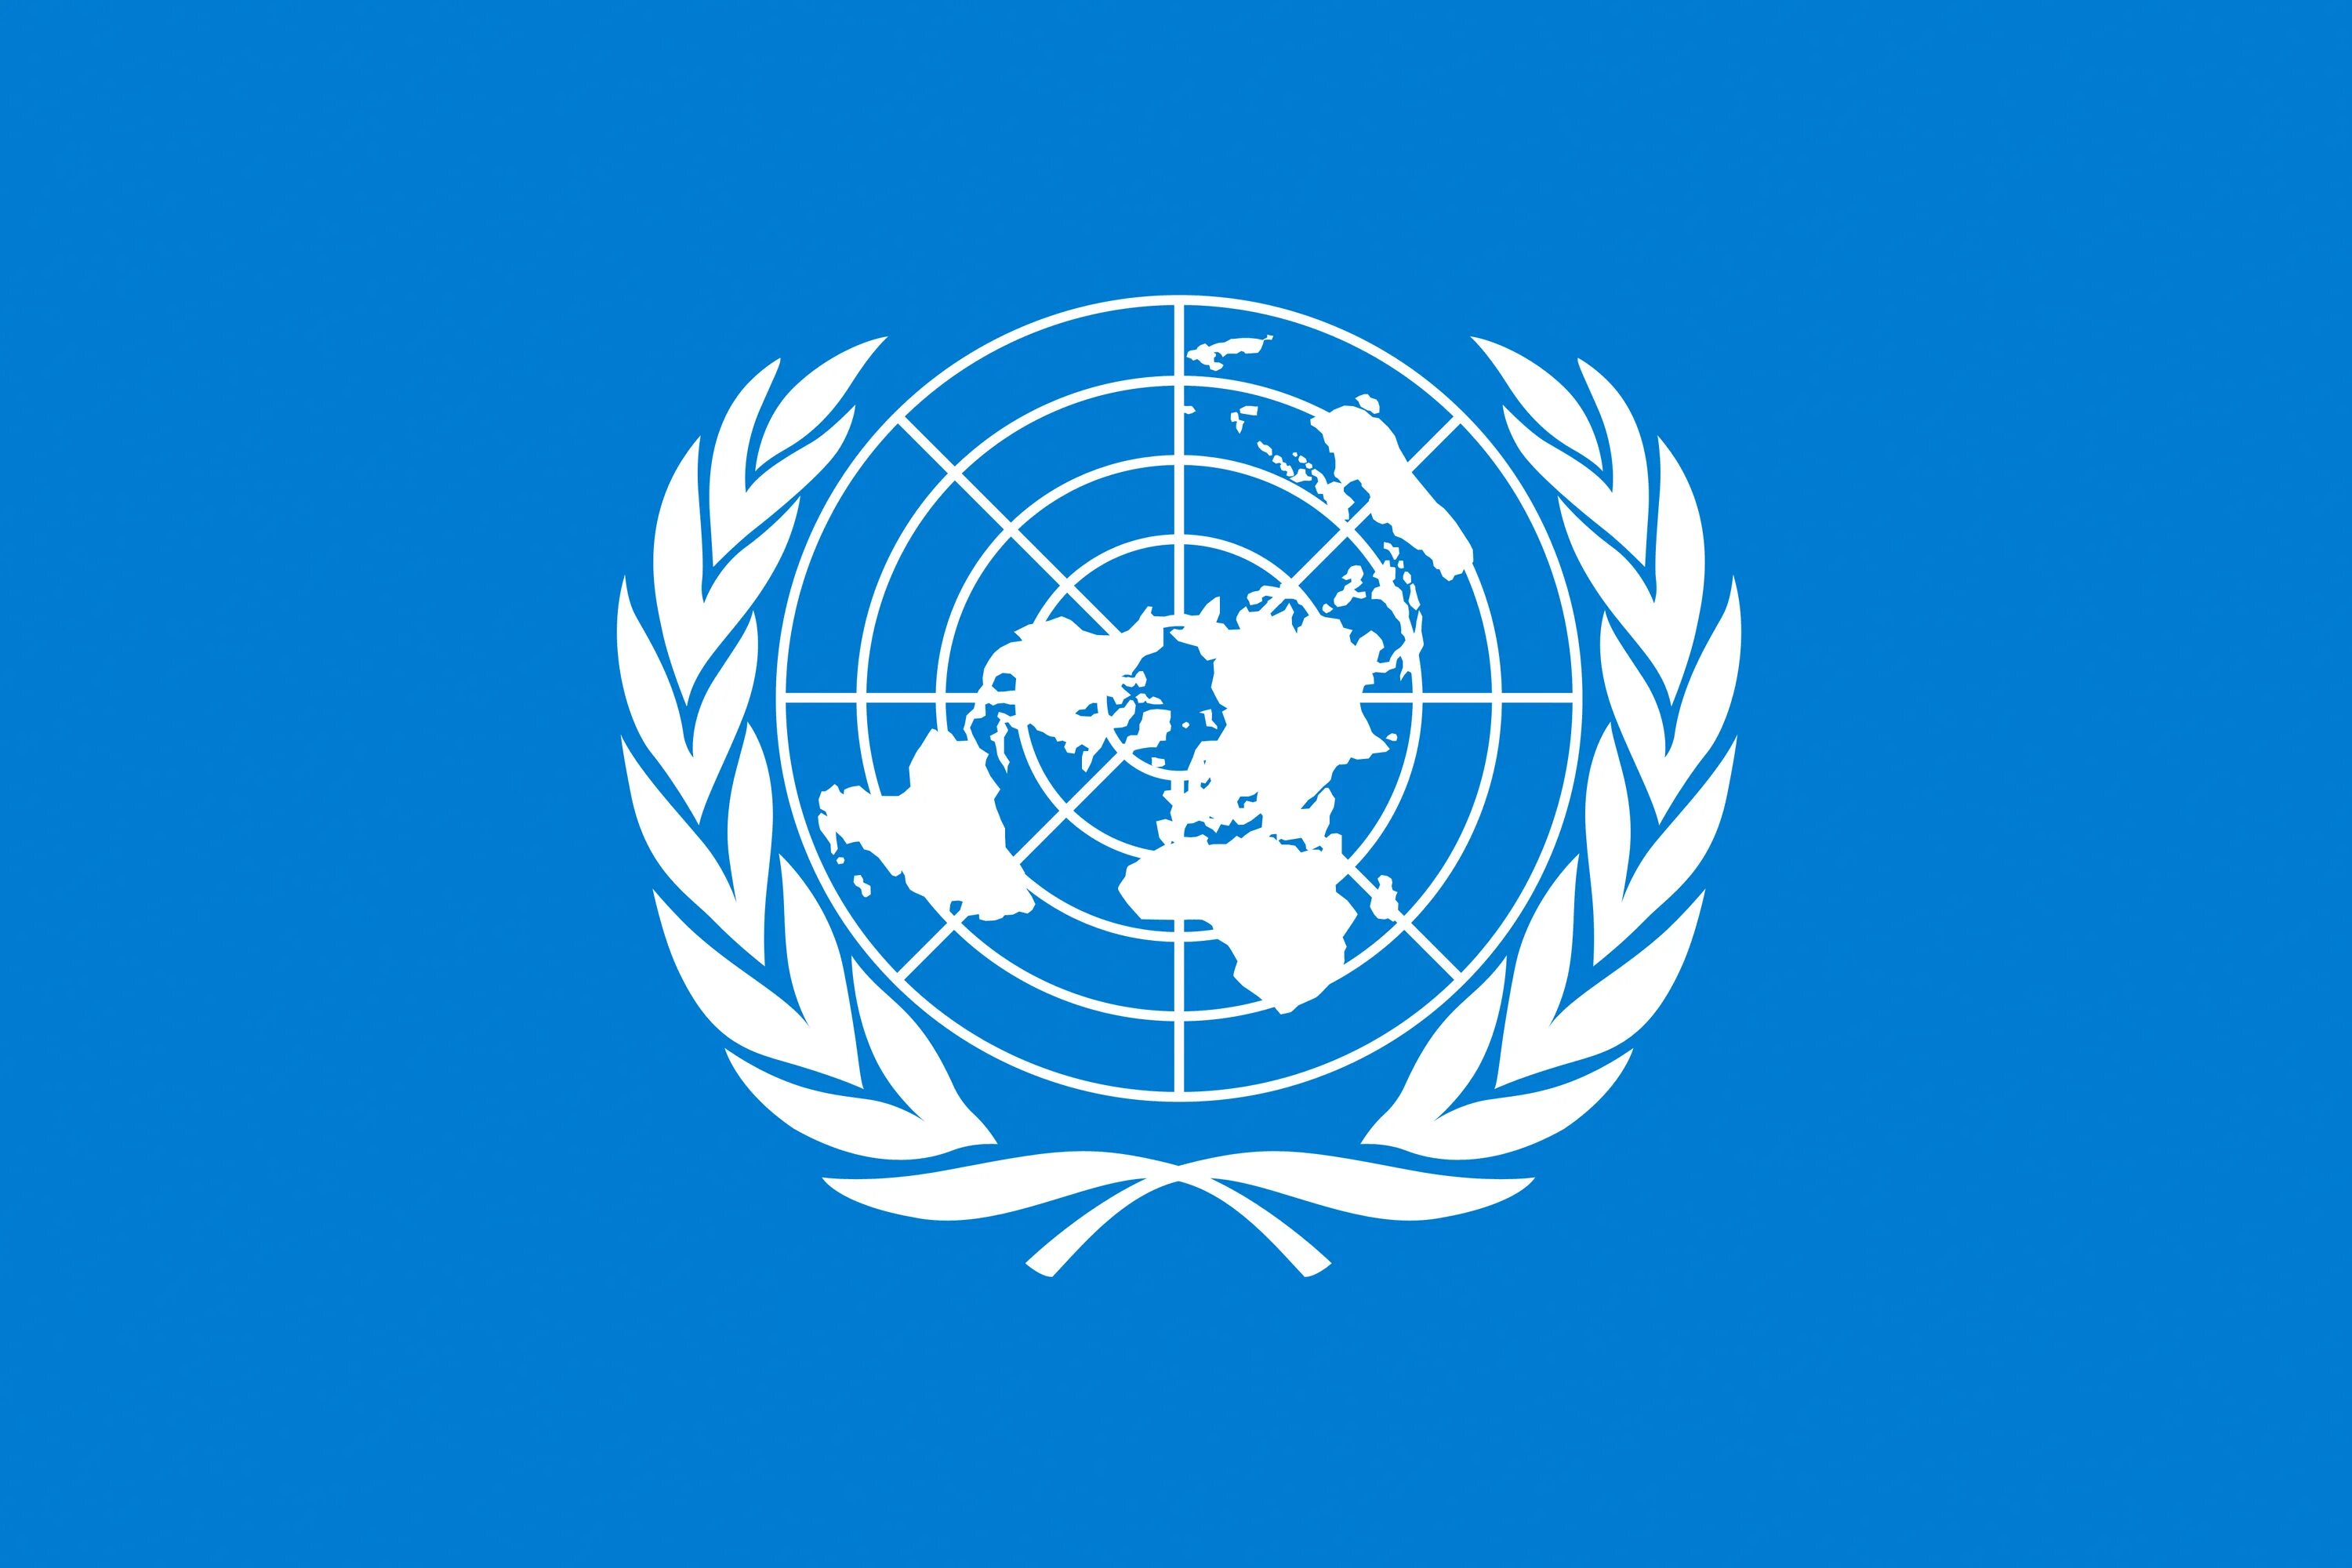 Флаг всемирной организации здравоохранения. Всемирная метеорологическая организация (WMO);. Флаг организации Объединенных наций. Организация Объединенных наций (ООН). Организация объединенных народов